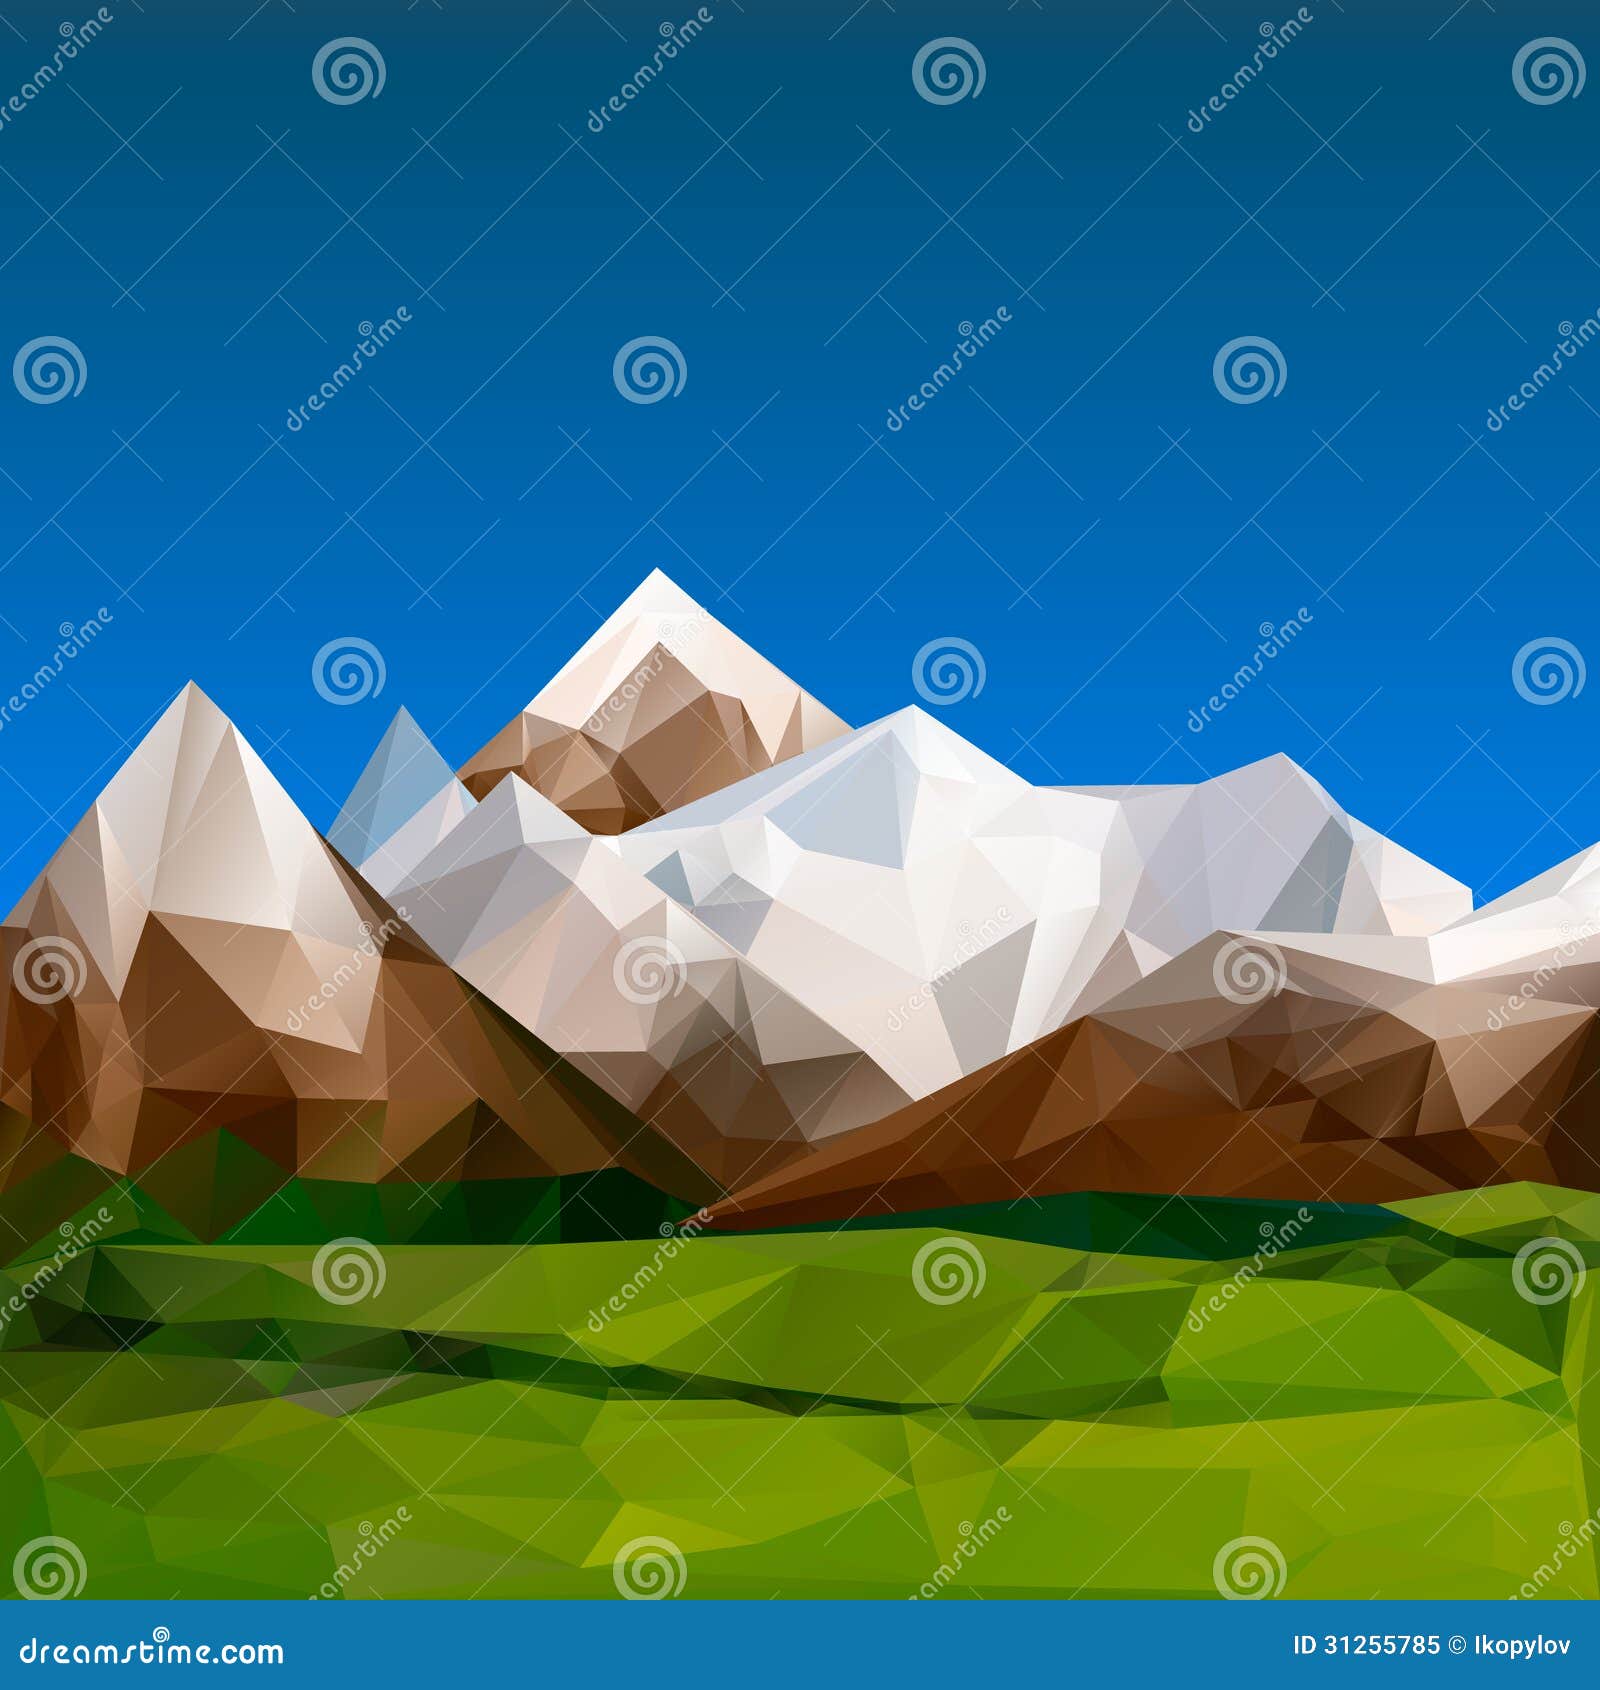 mountainous terrain, polygonal background